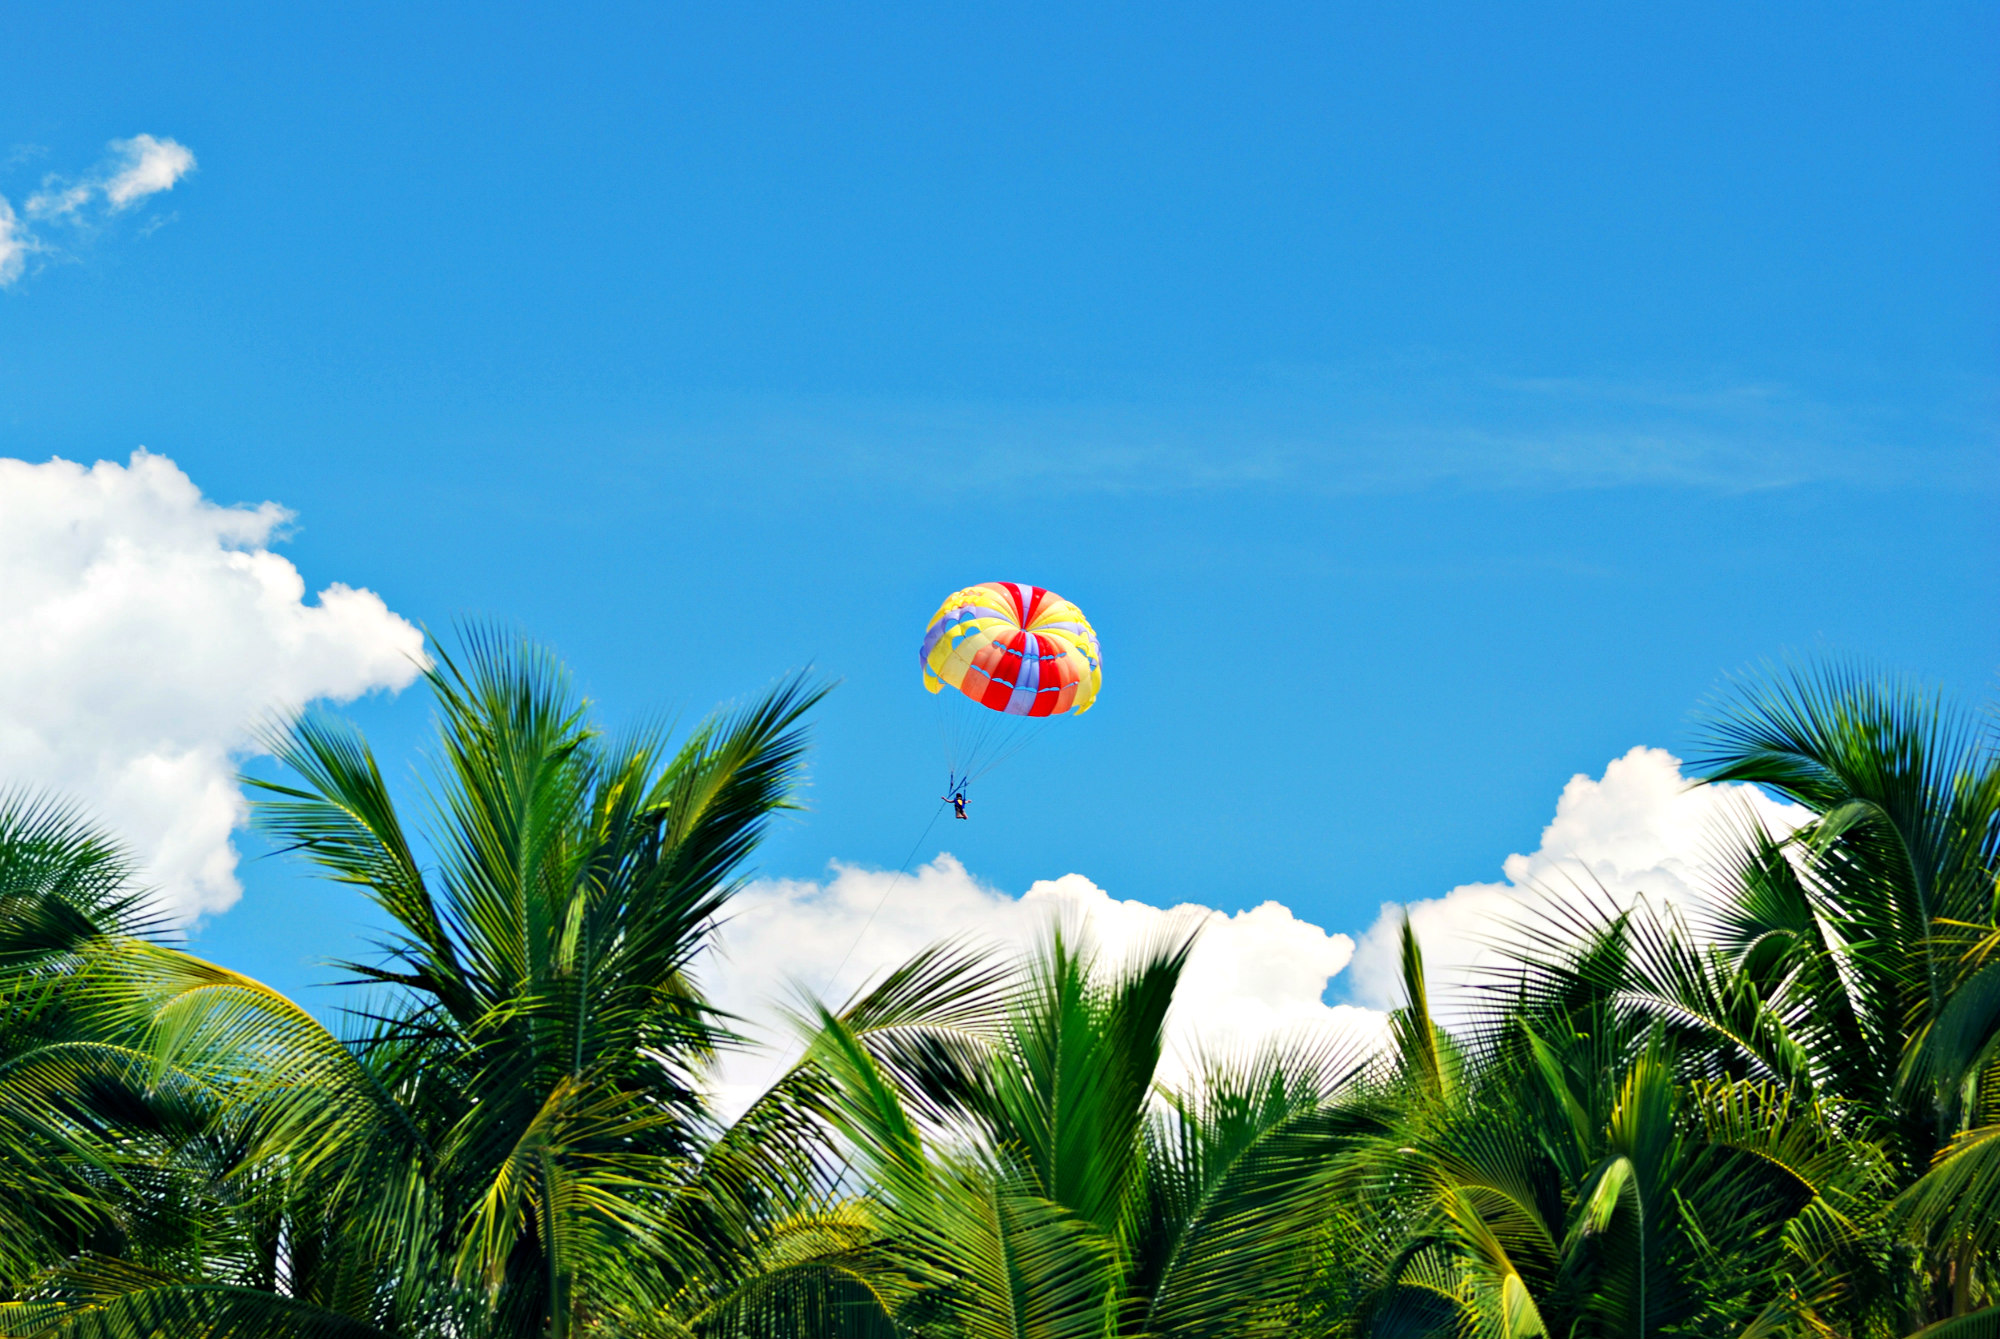 Parasailing through a bright-blue sky over a grove of leafy palm trees